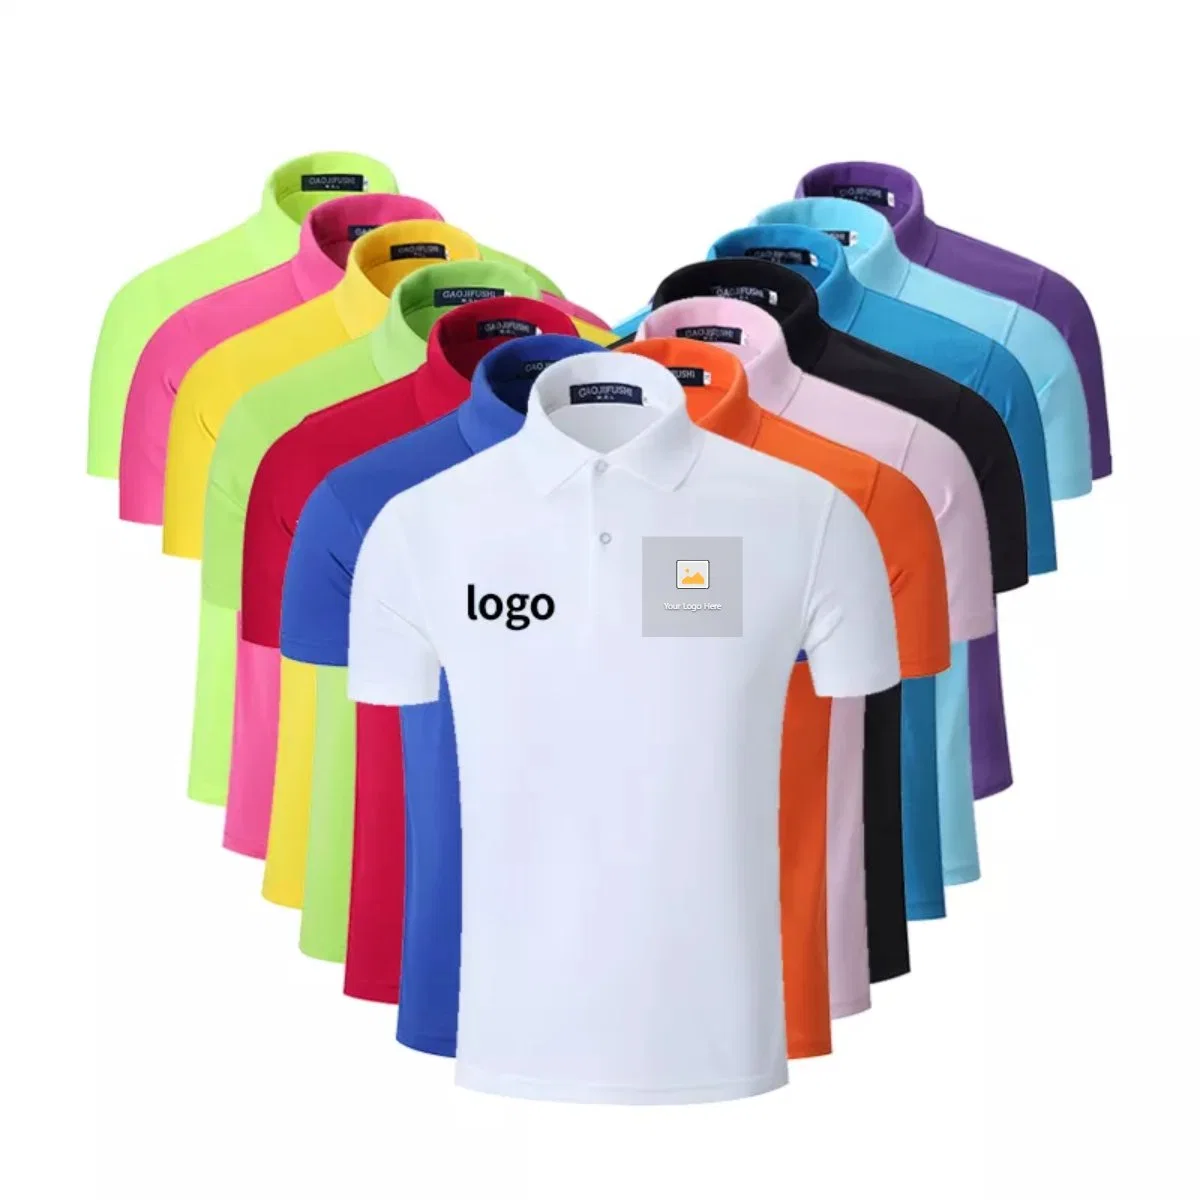 Verkaufsförderung Benutzerdefinierte Logo Solid Color Plain Blank Pique Polyester Stickerei Washed T-Shirt Baumwoll-T-Shirts Herren Poloshirts